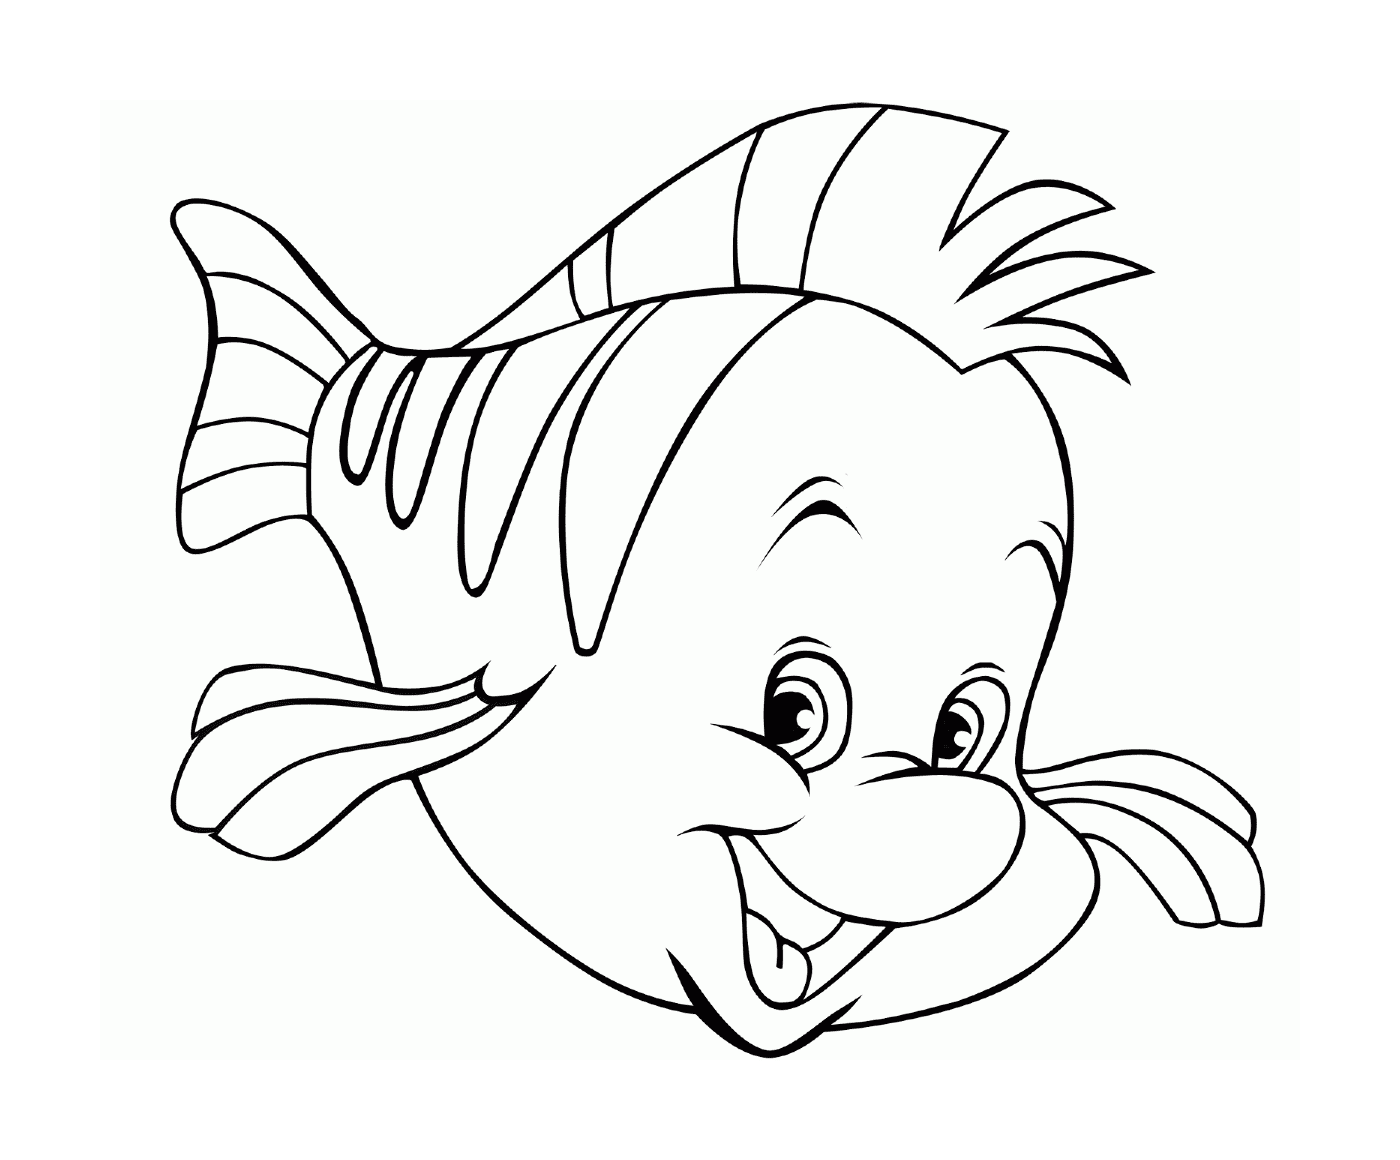  Smileing fish 